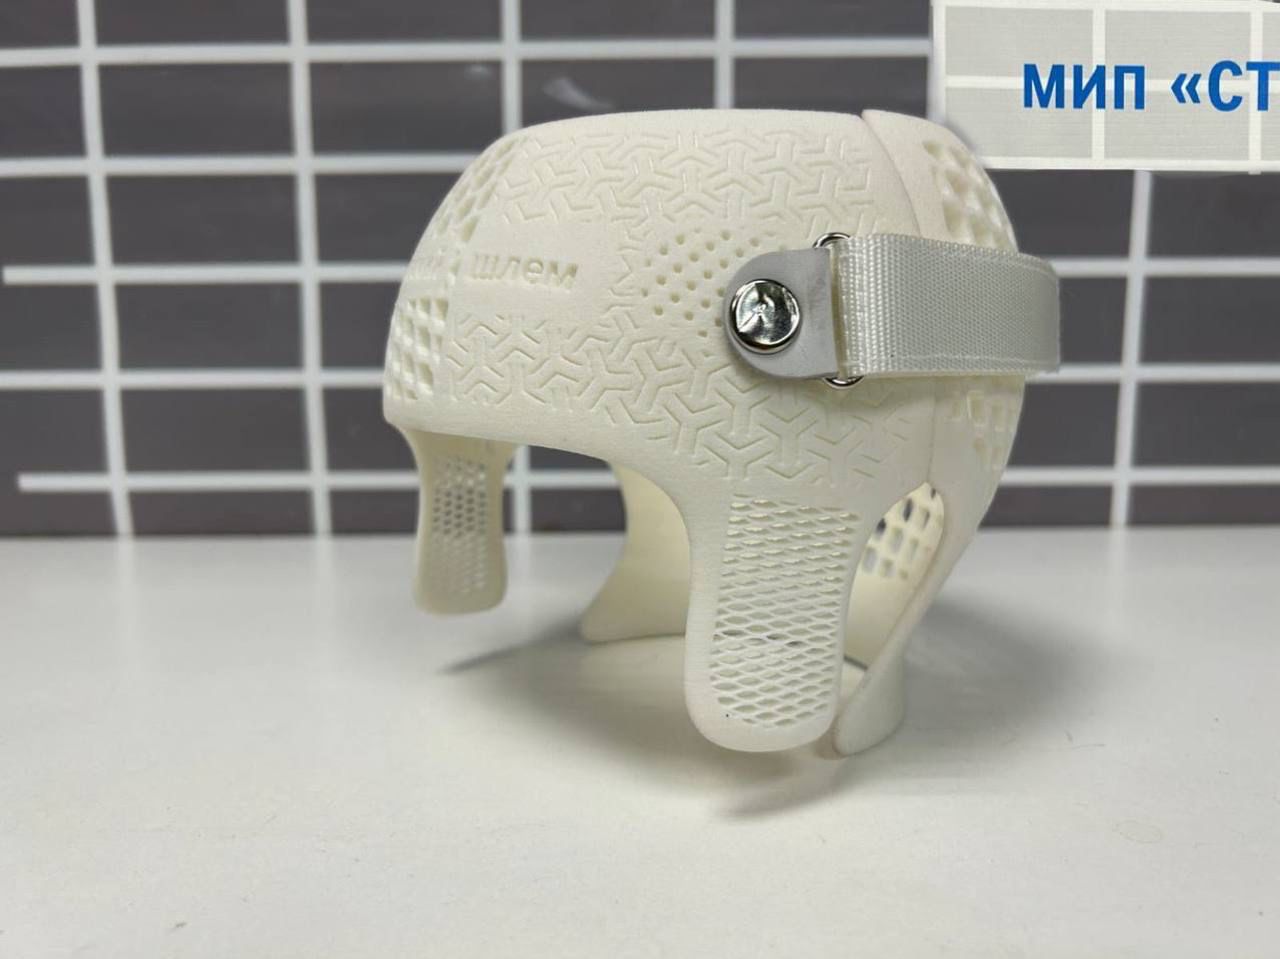 3D-технологии в лечении детей с деформациями черепа – в НМИЦ имени Г. И. Турнера создали производство ортопедических шлемов нового поколения